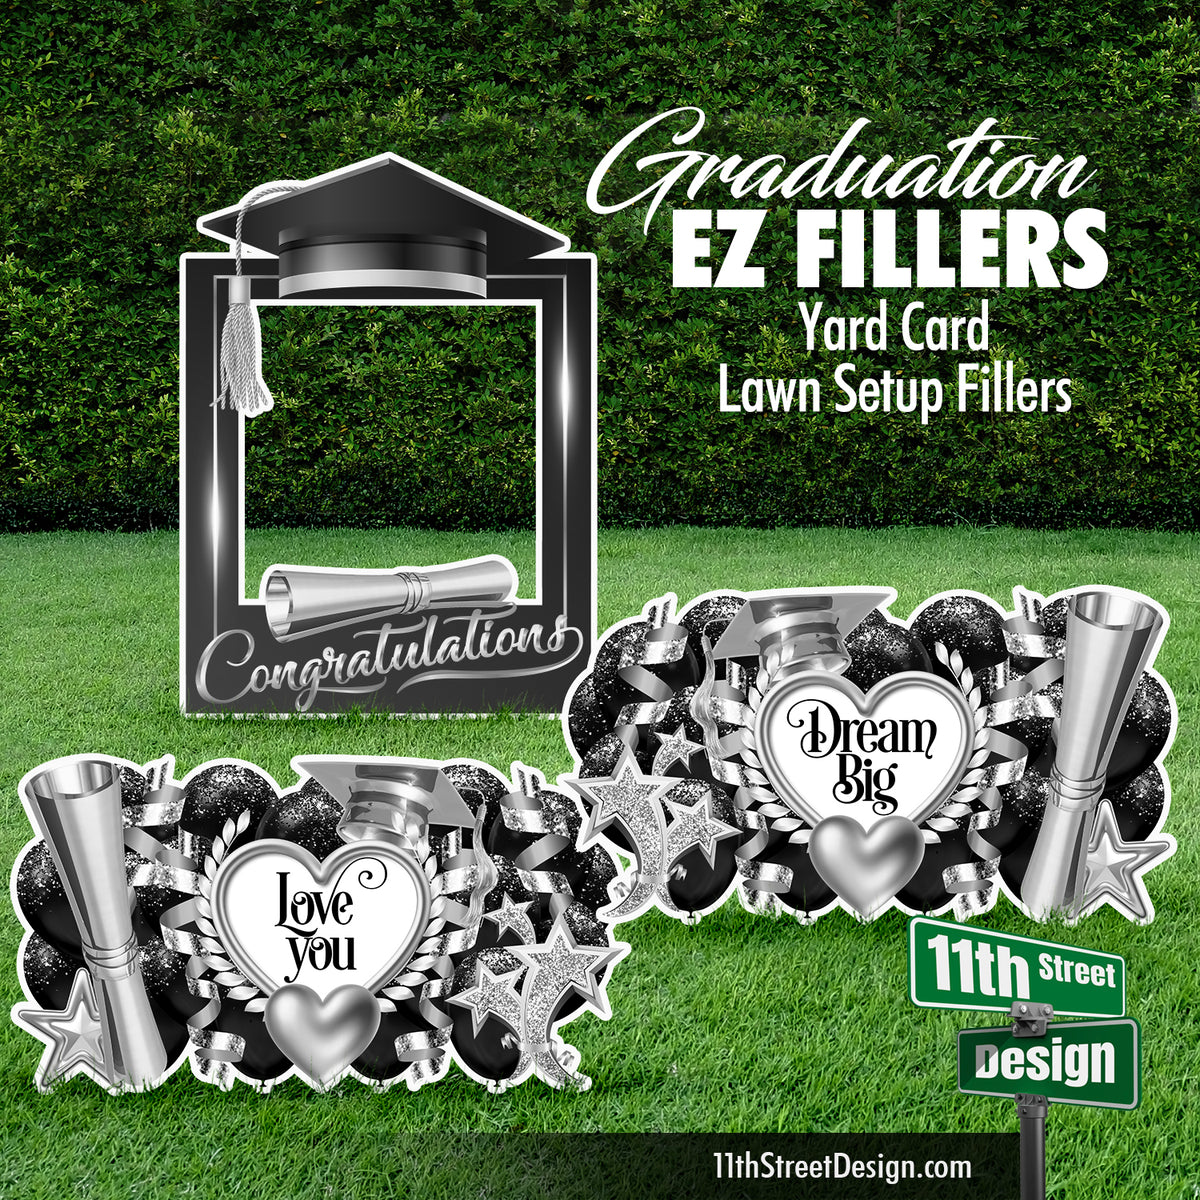 EZ Filler-Graduation Frame Heart Quotes - Yard Card Setup Fillers